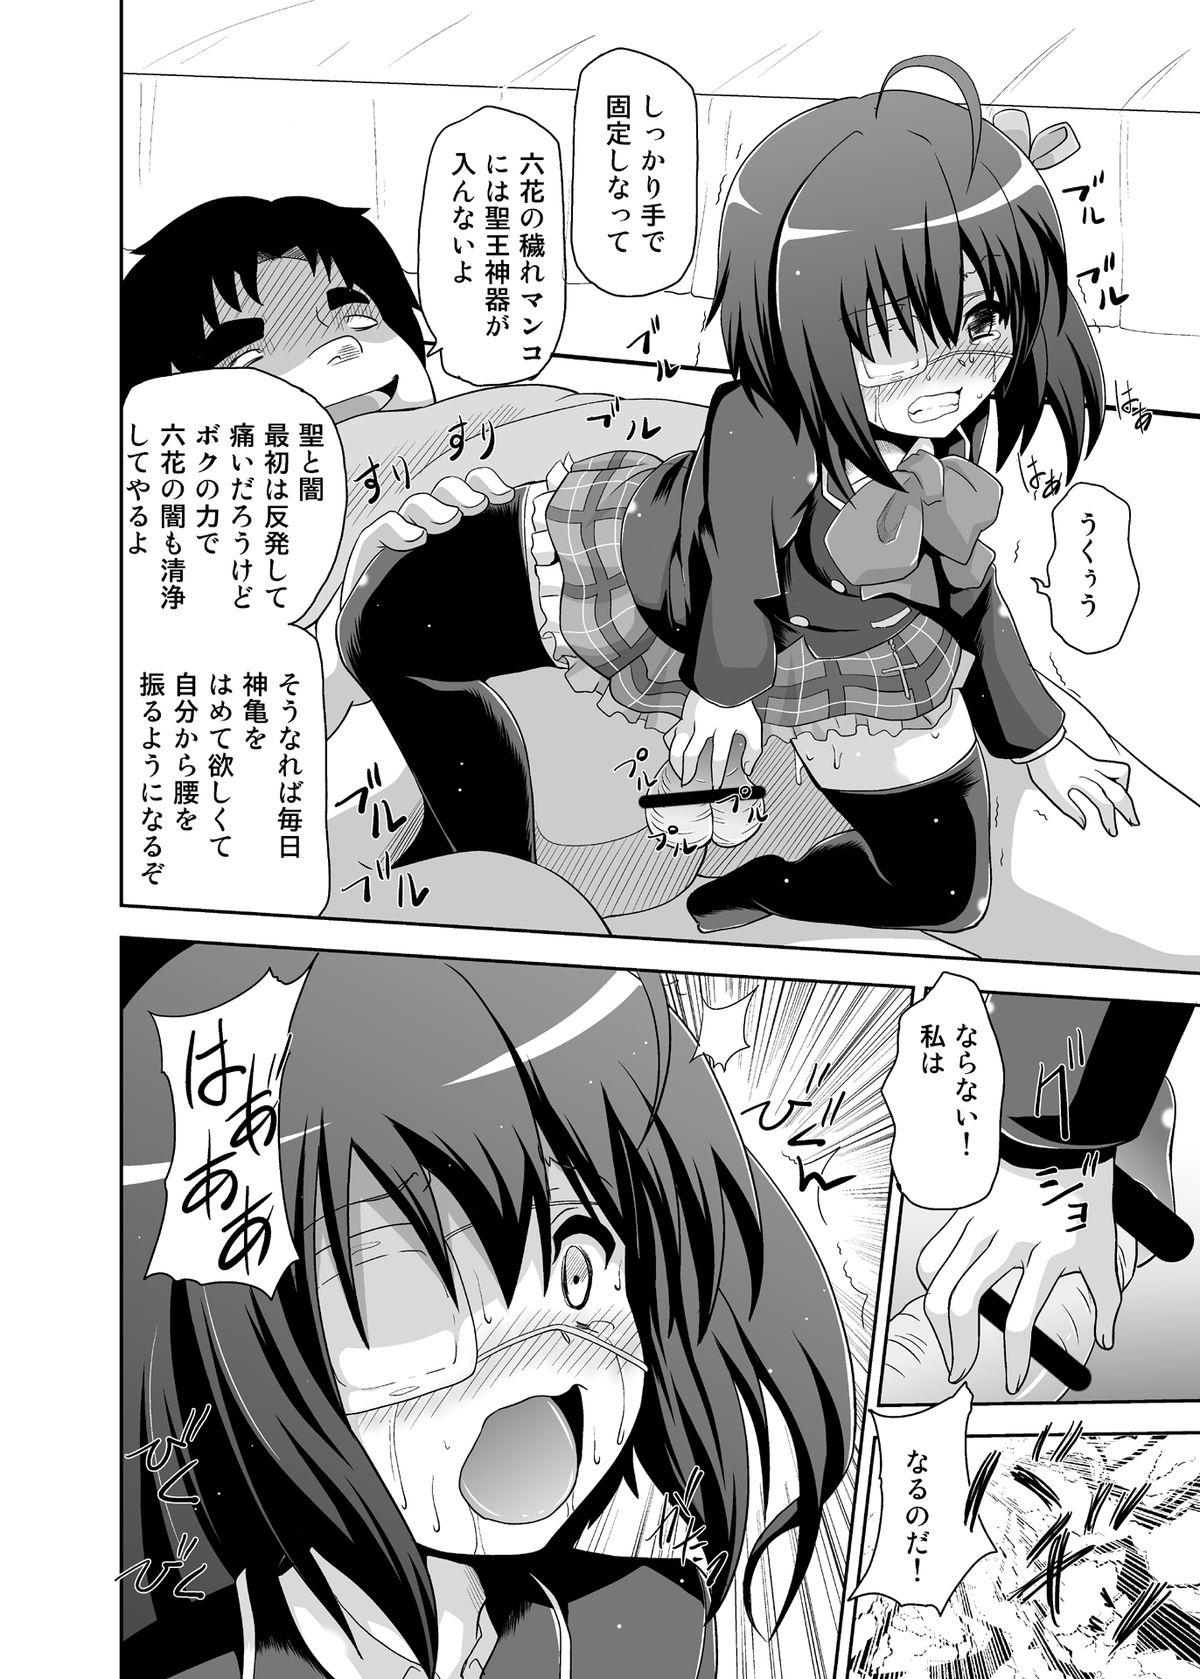 Perrito Zutto Issho - Chuunibyou demo koi ga shitai Girls Fucking - Page 11